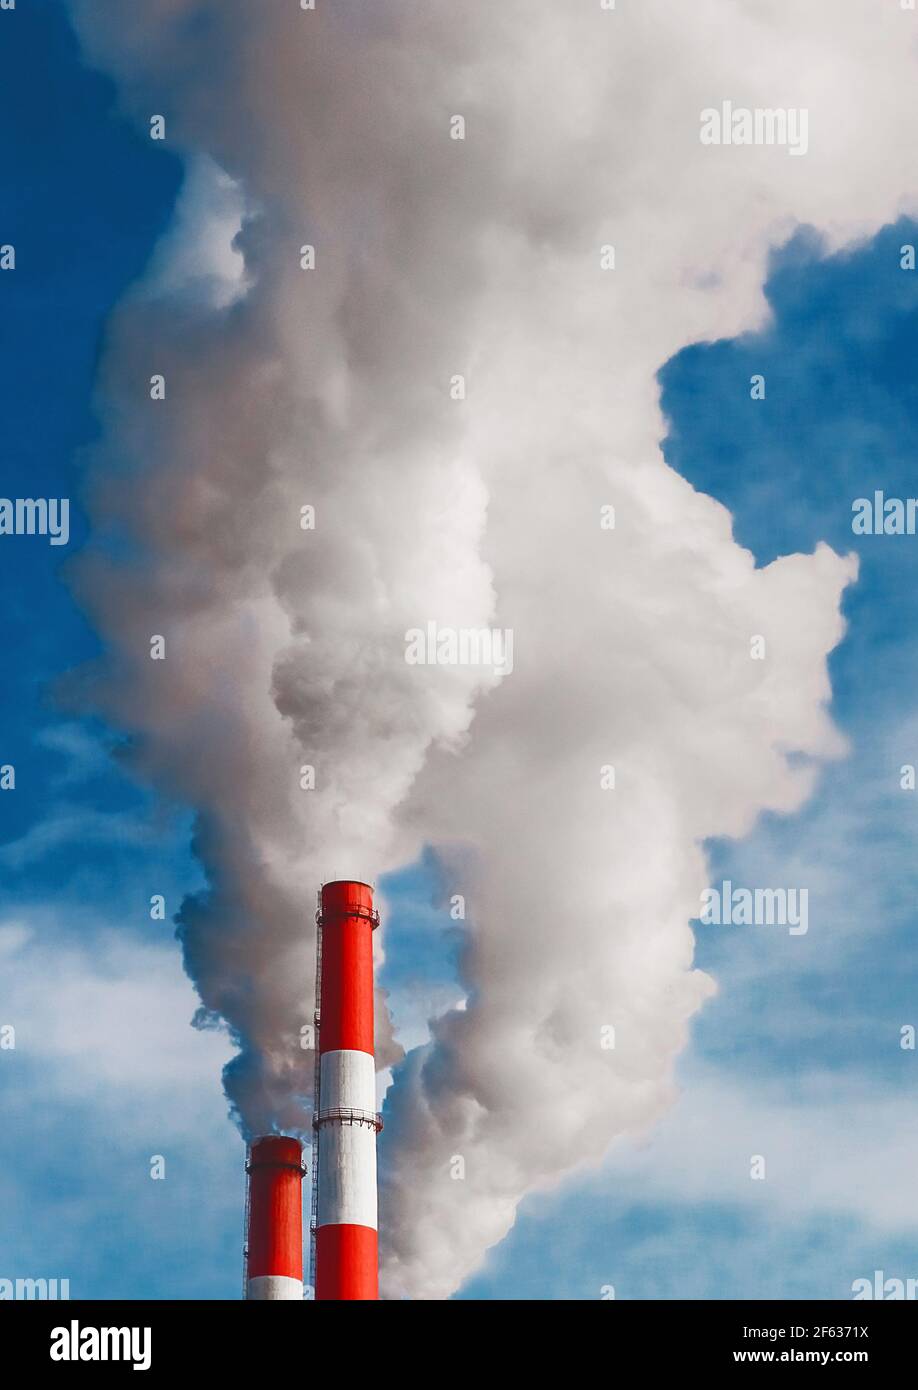 Umweltverschmutzung, Umweltproblem, Rauch aus dem Schornstein einer Industrieanlage oder thermisches Kraftwerk auf einem Hintergrund des blauen Himmels mit Stockfoto